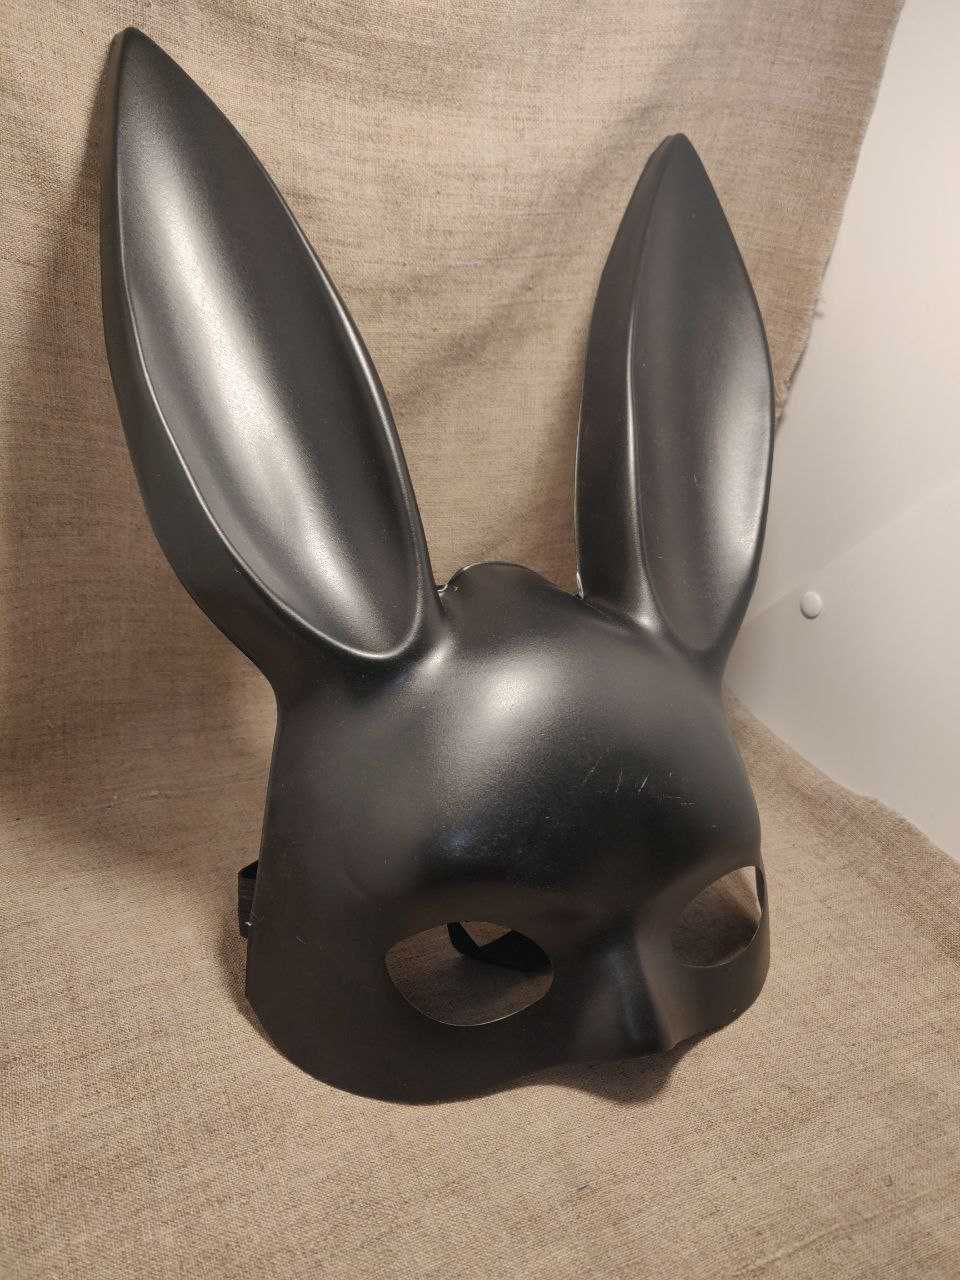 Матова маска зайця кролика плейбой playboy